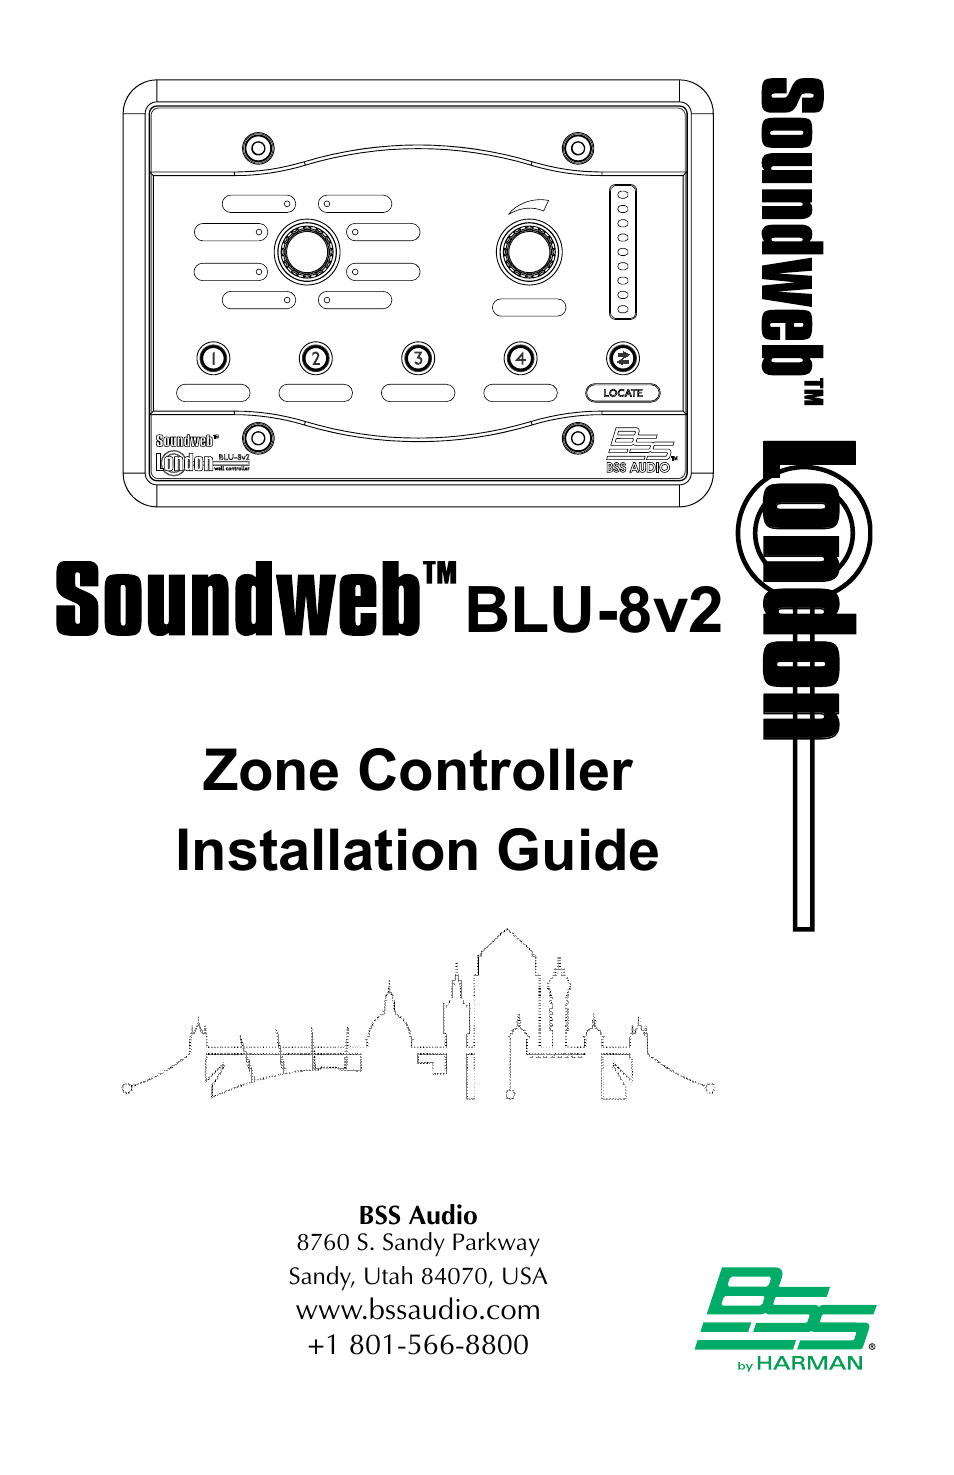 BLU-8v2WHT Install Guide